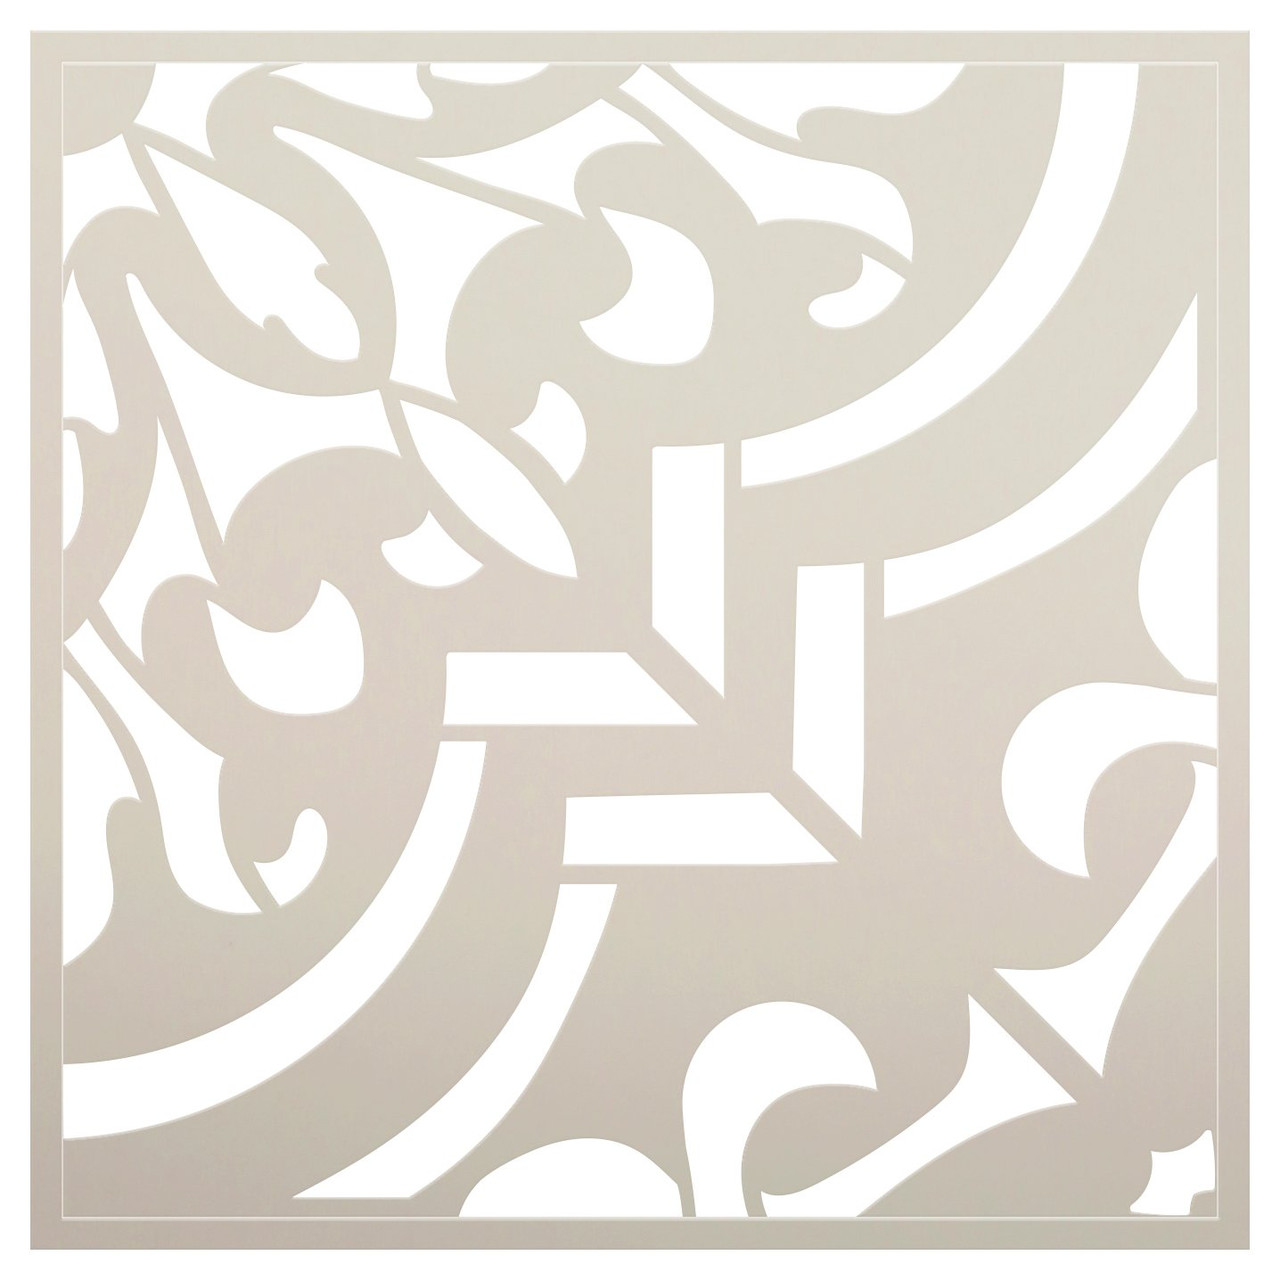 Ornate Floral Quatrefoil Tile Stencil by StudioR12 | DIY Kitchen Backsplash | Quarter Pattern for Bathroom Floor & Wall | Select Size